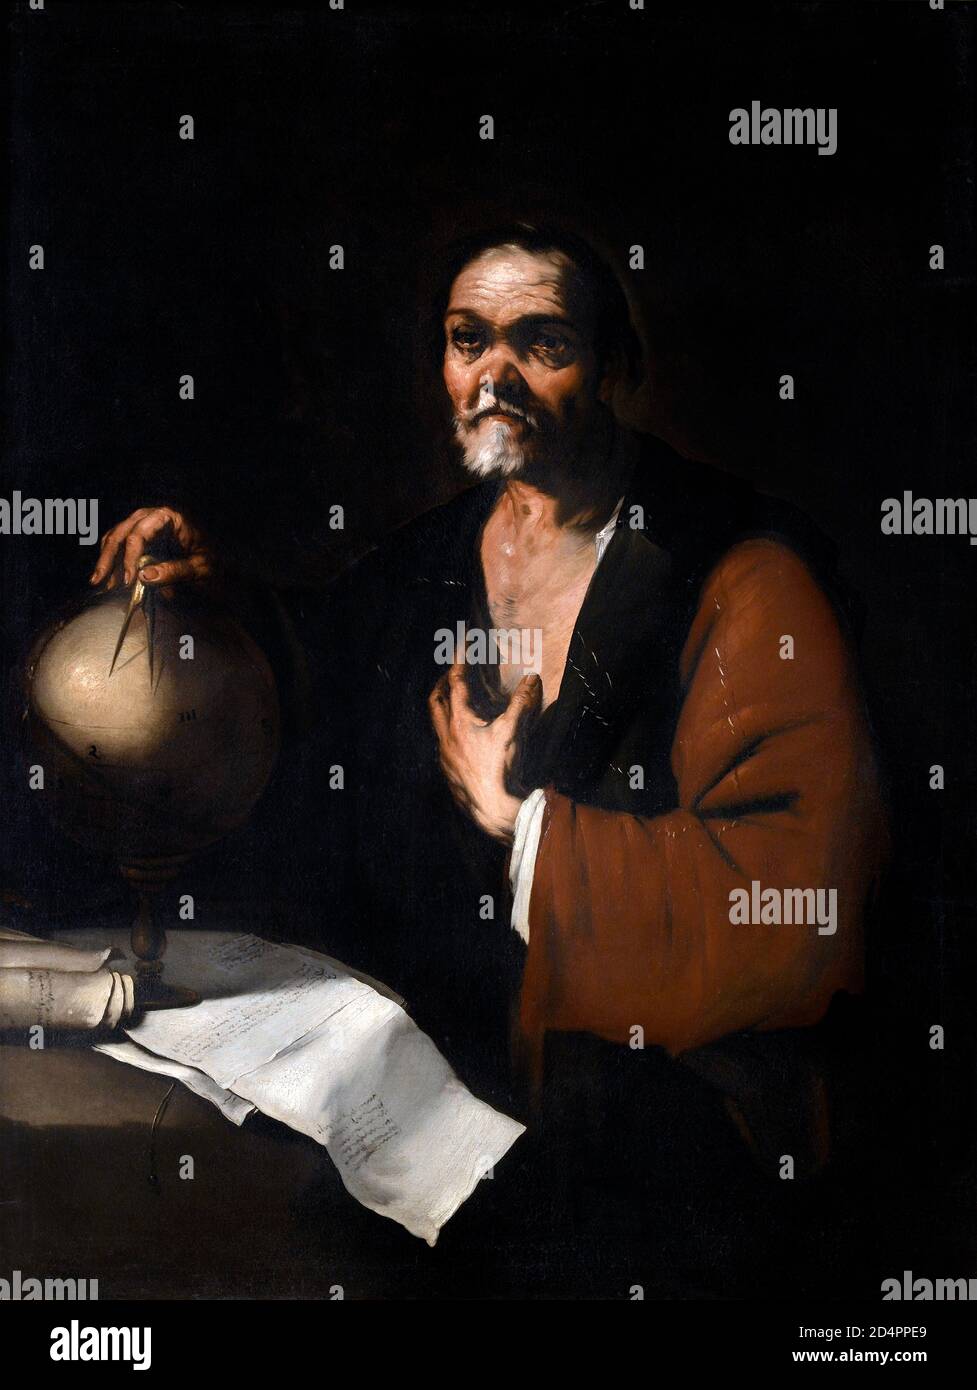 Heráclito. Retrato del antiguo filósofo griego, Heráclito de Éfeso (c. 535-c. 475 AC) por Luca Giordano (1634-1705), óleo sobre lienzo, c.1655-60 Foto de stock